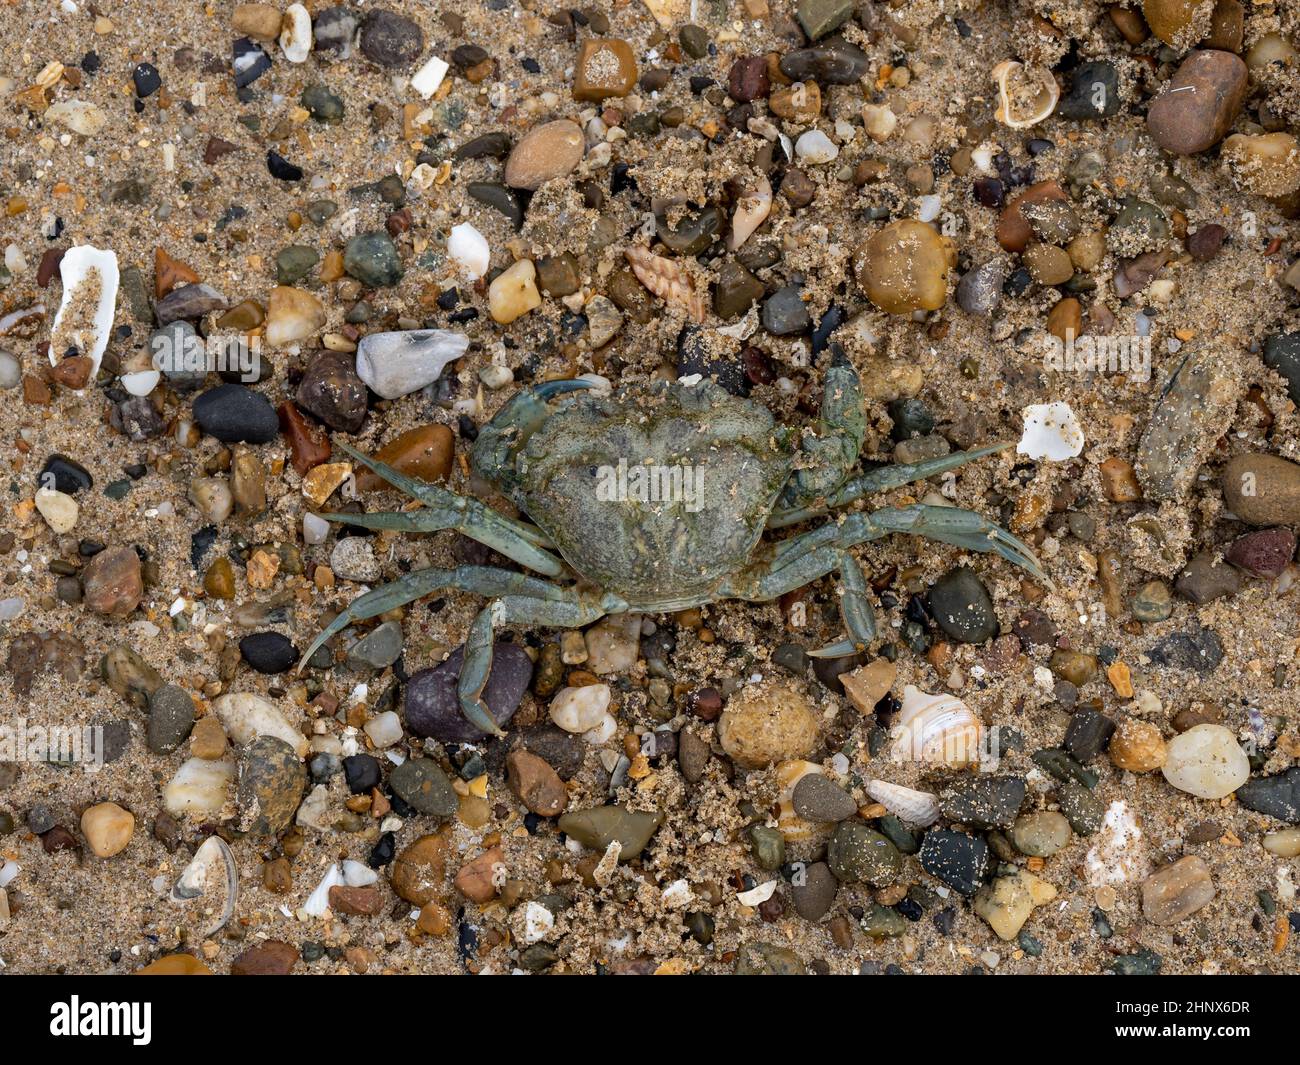 Dead European Green Crab sur Llanddwyn Beach sur Anglesey.Également connu sous le nom de crabe de la côte européenne. Banque D'Images